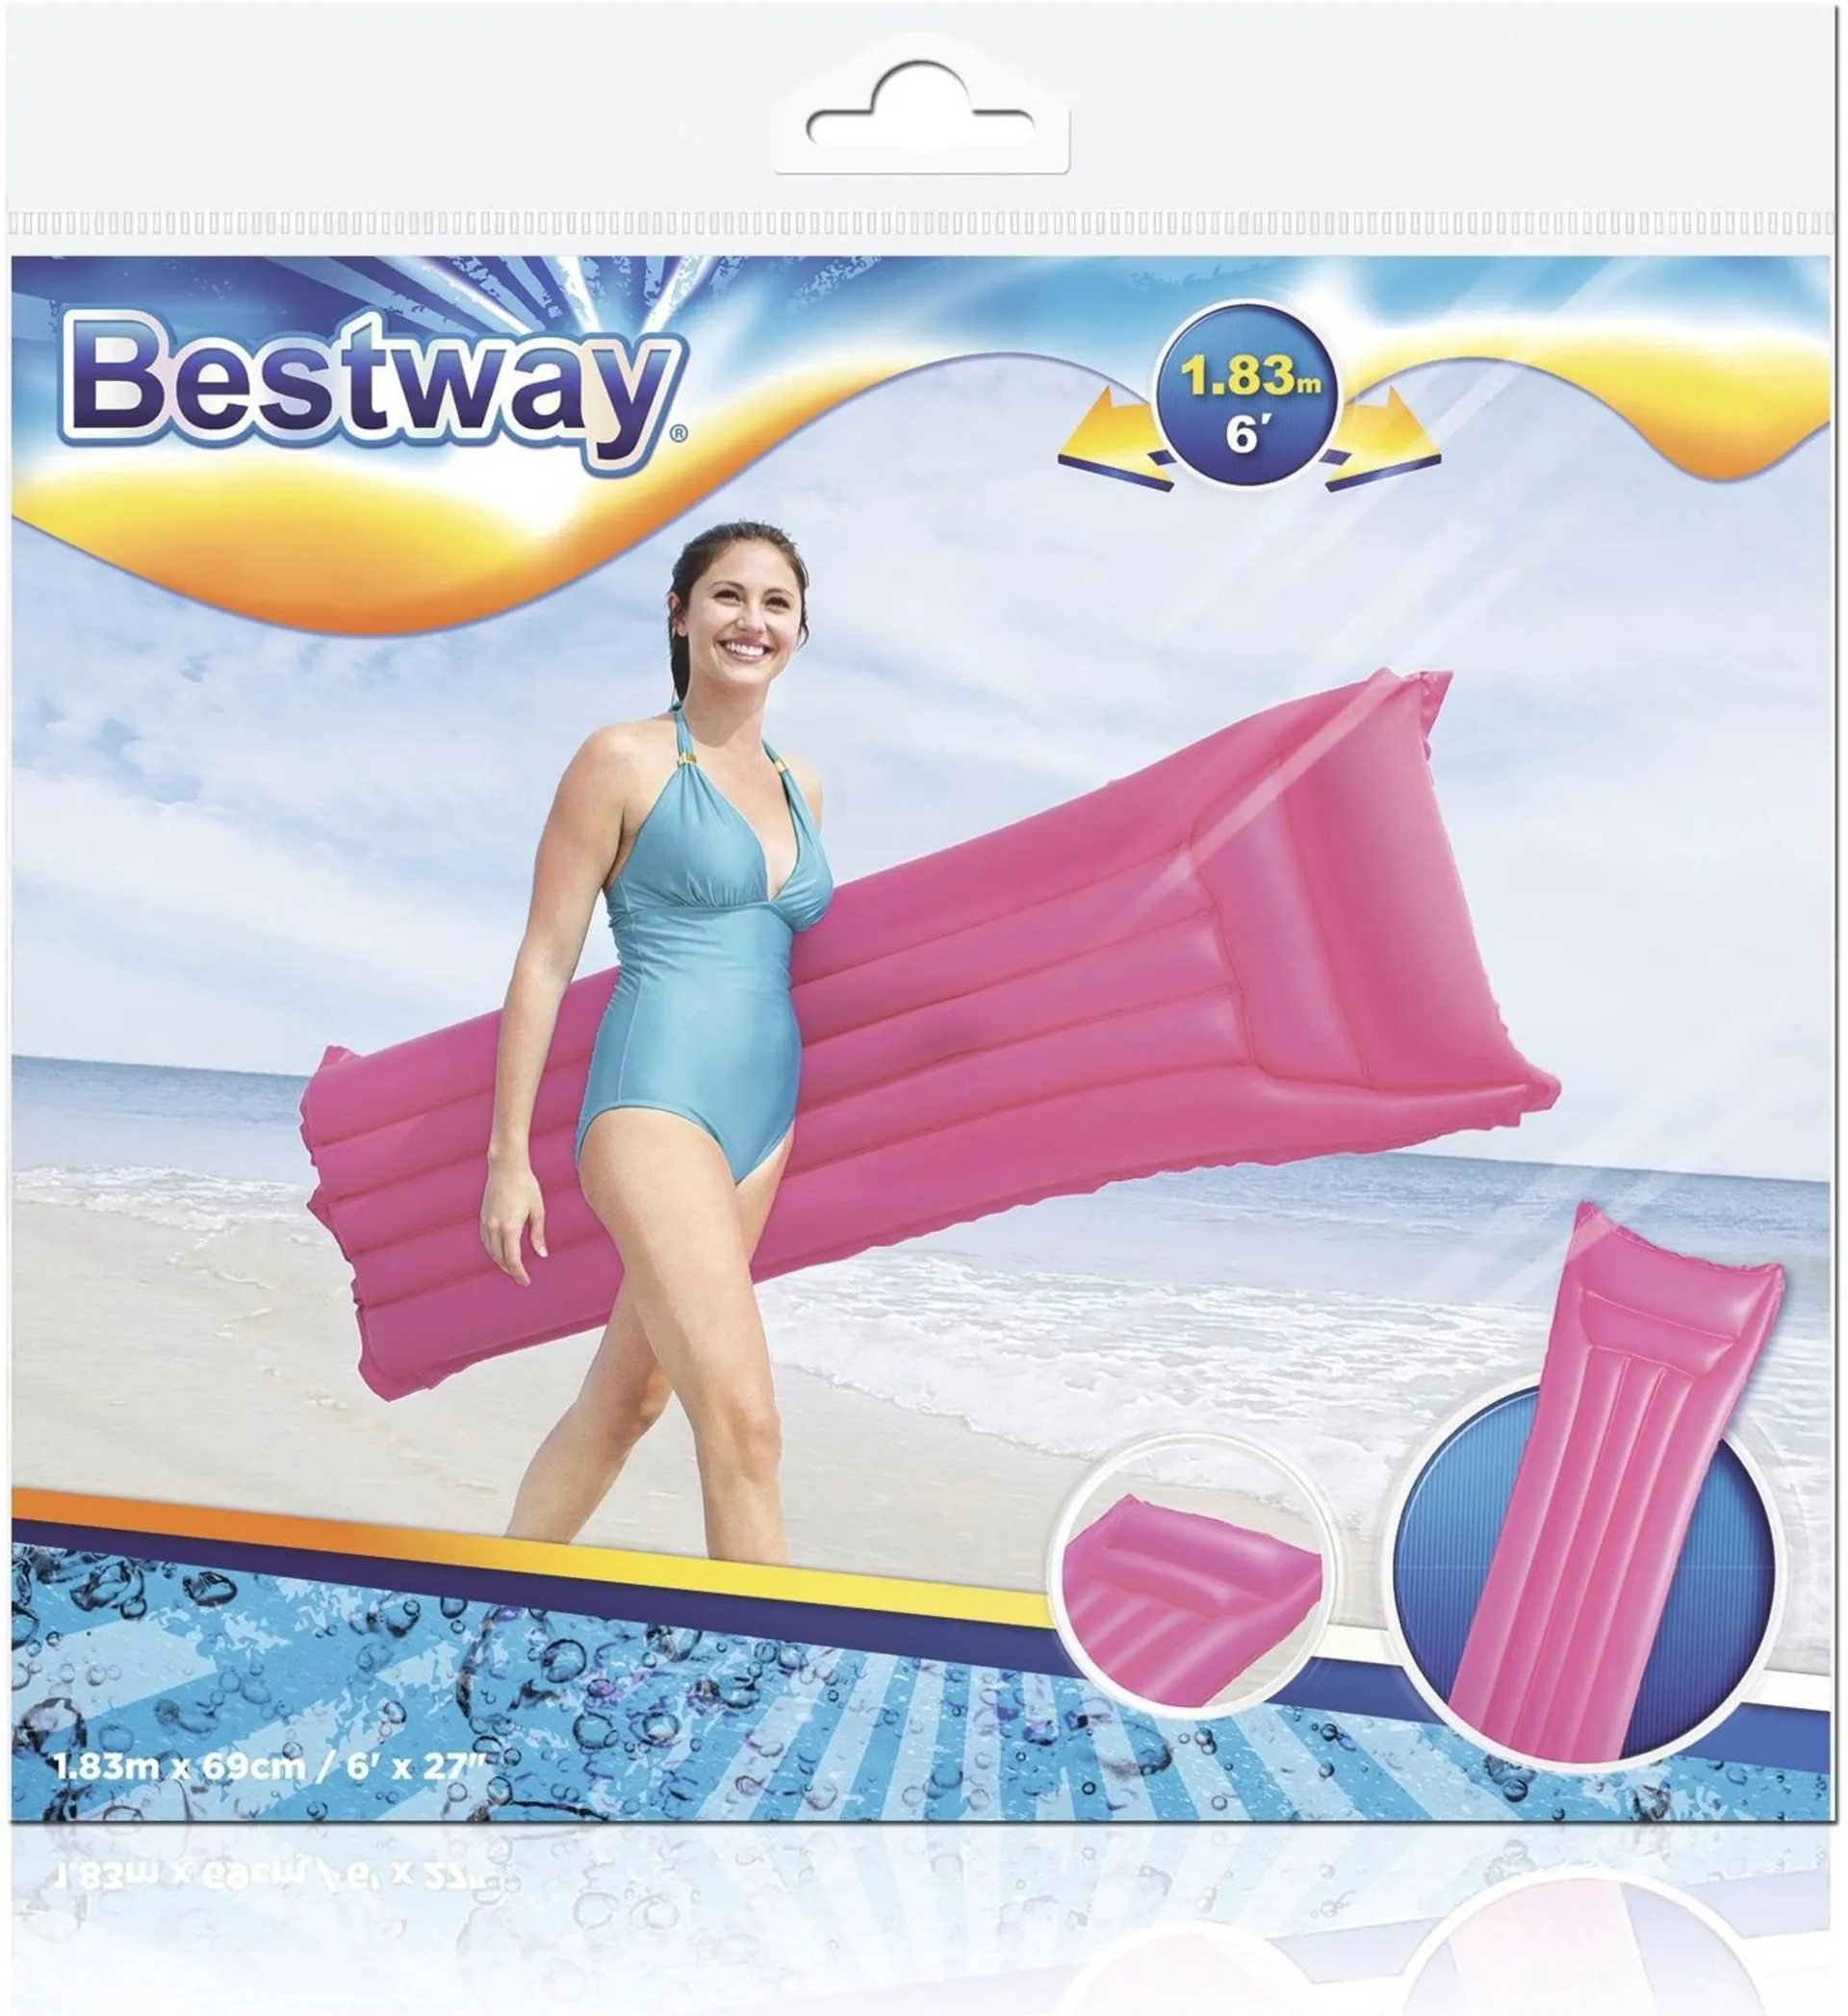 Bestway uimapatja 183x69 cm, erilaisia - 3